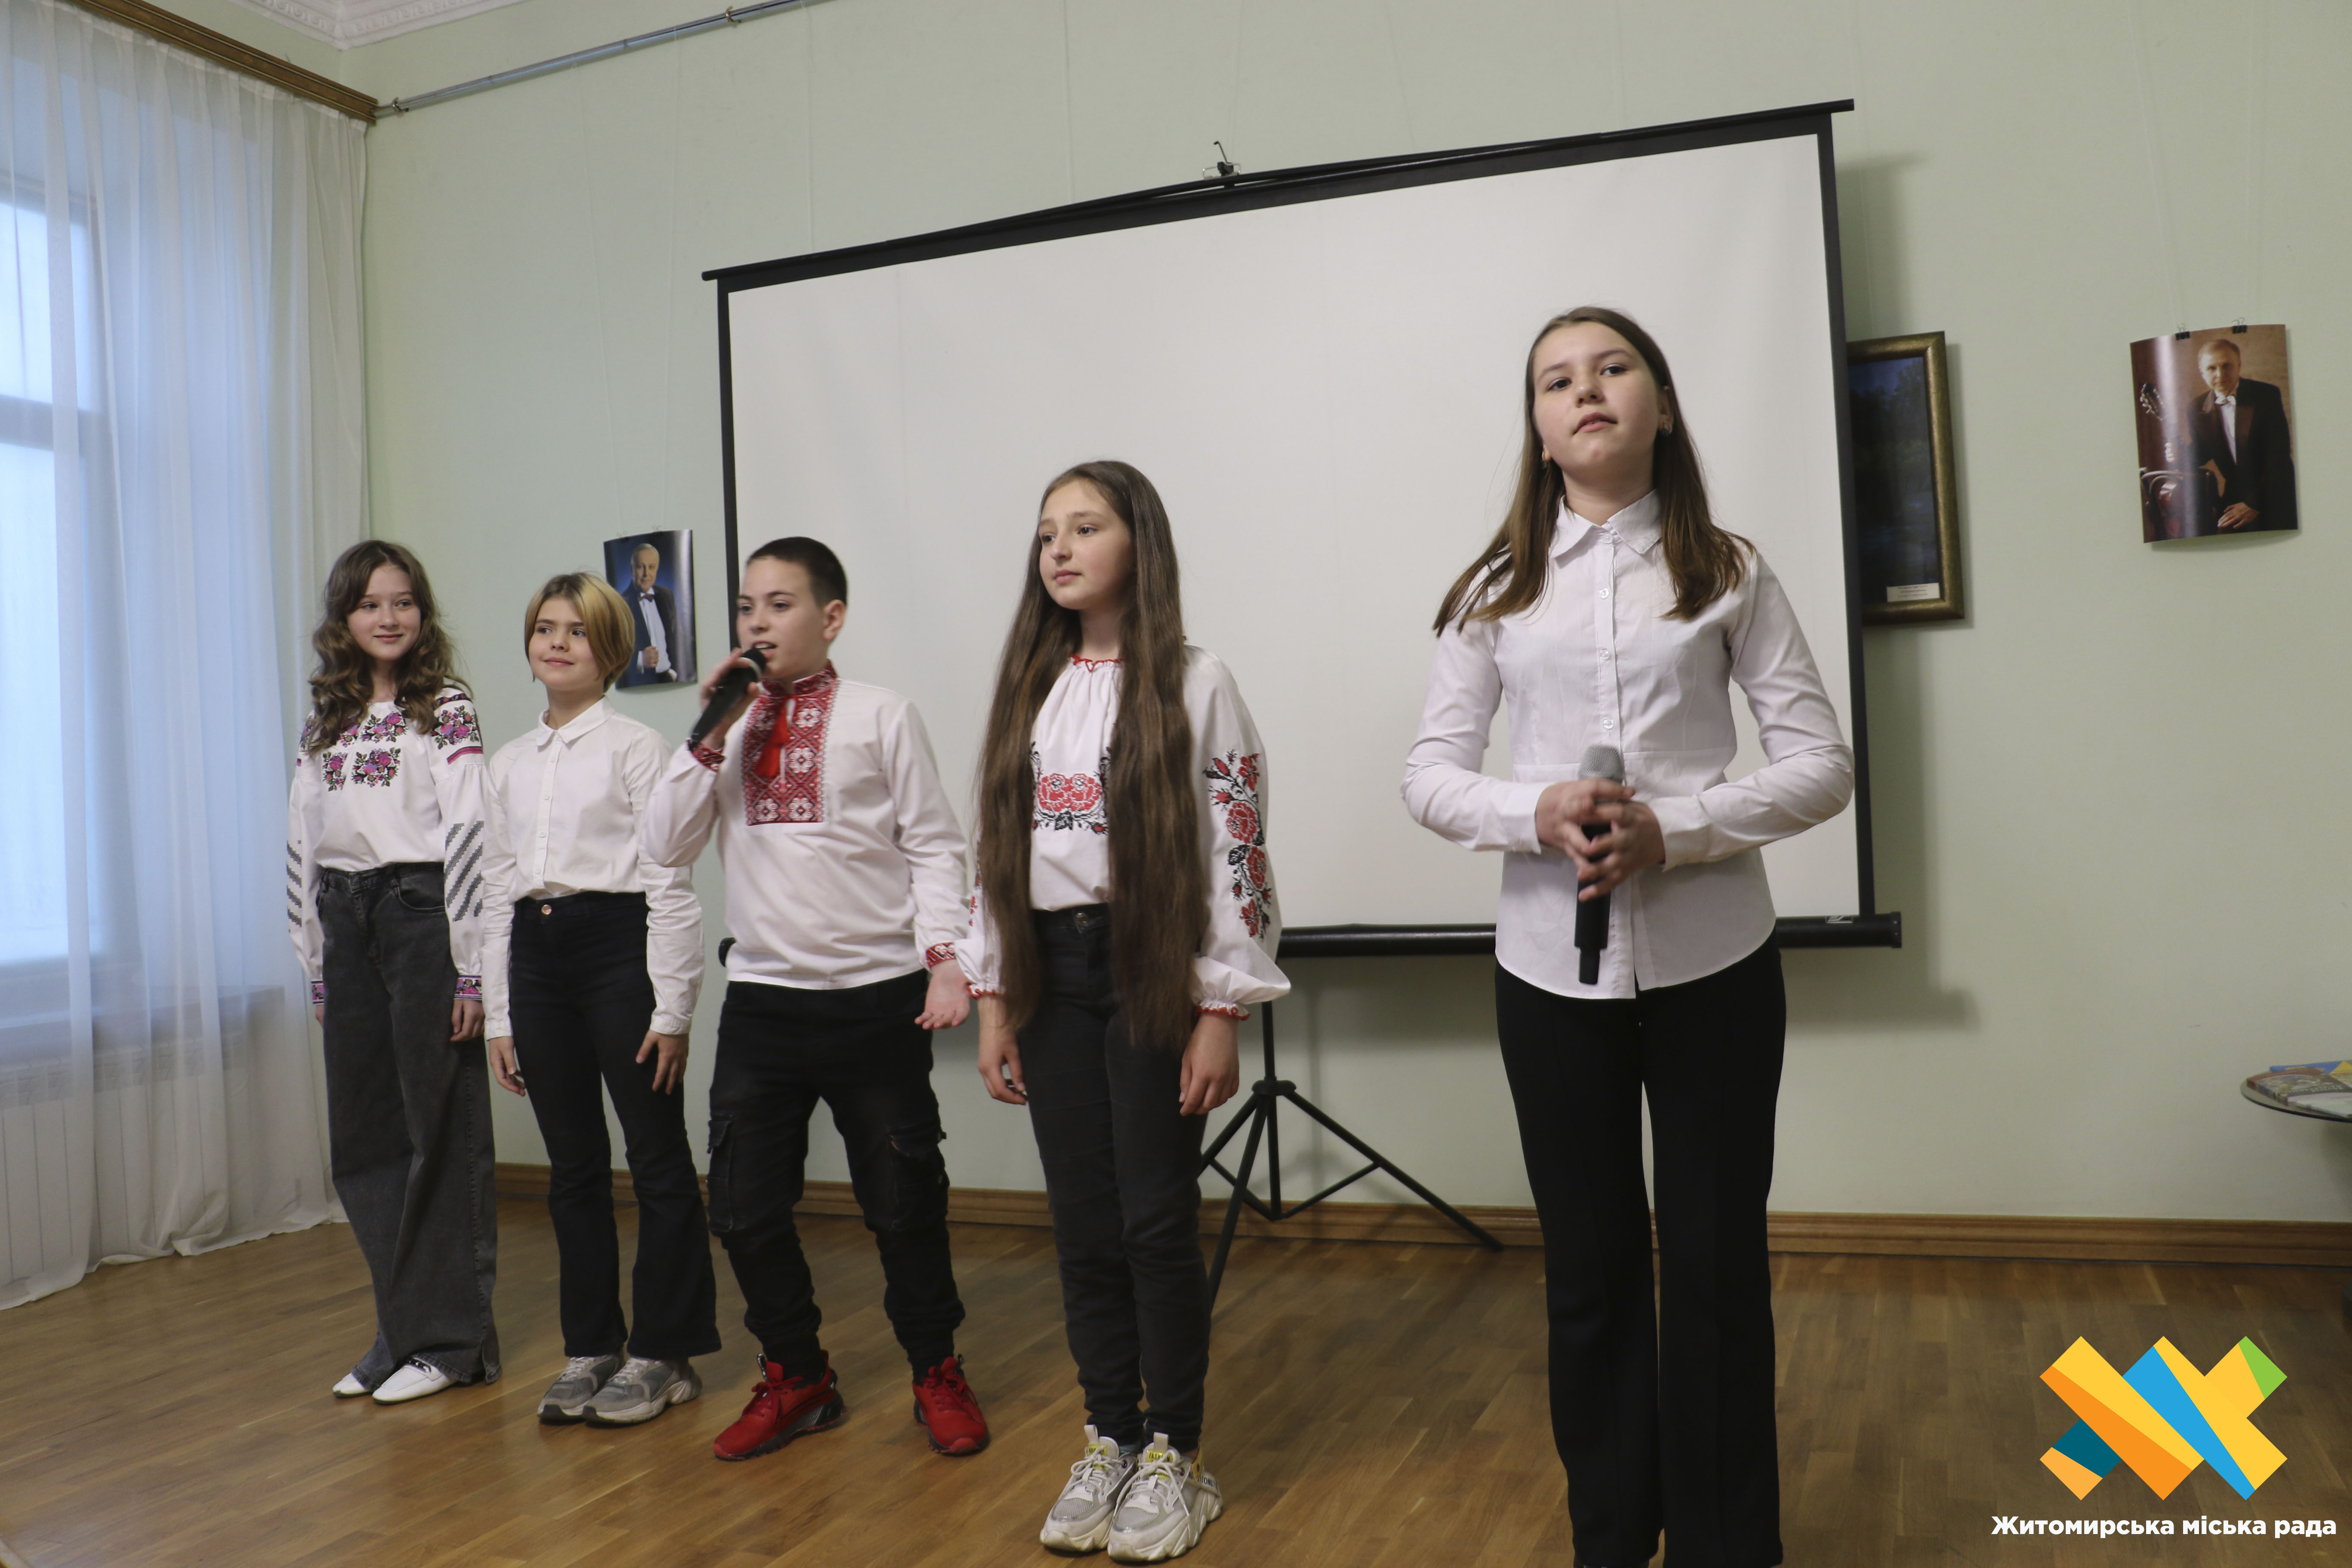 «Музика серця» – учні та вчителі ліцею № 20 провели літературно-музичний вечір, присвячений видатному земляку Володимиру Шинкаруку 